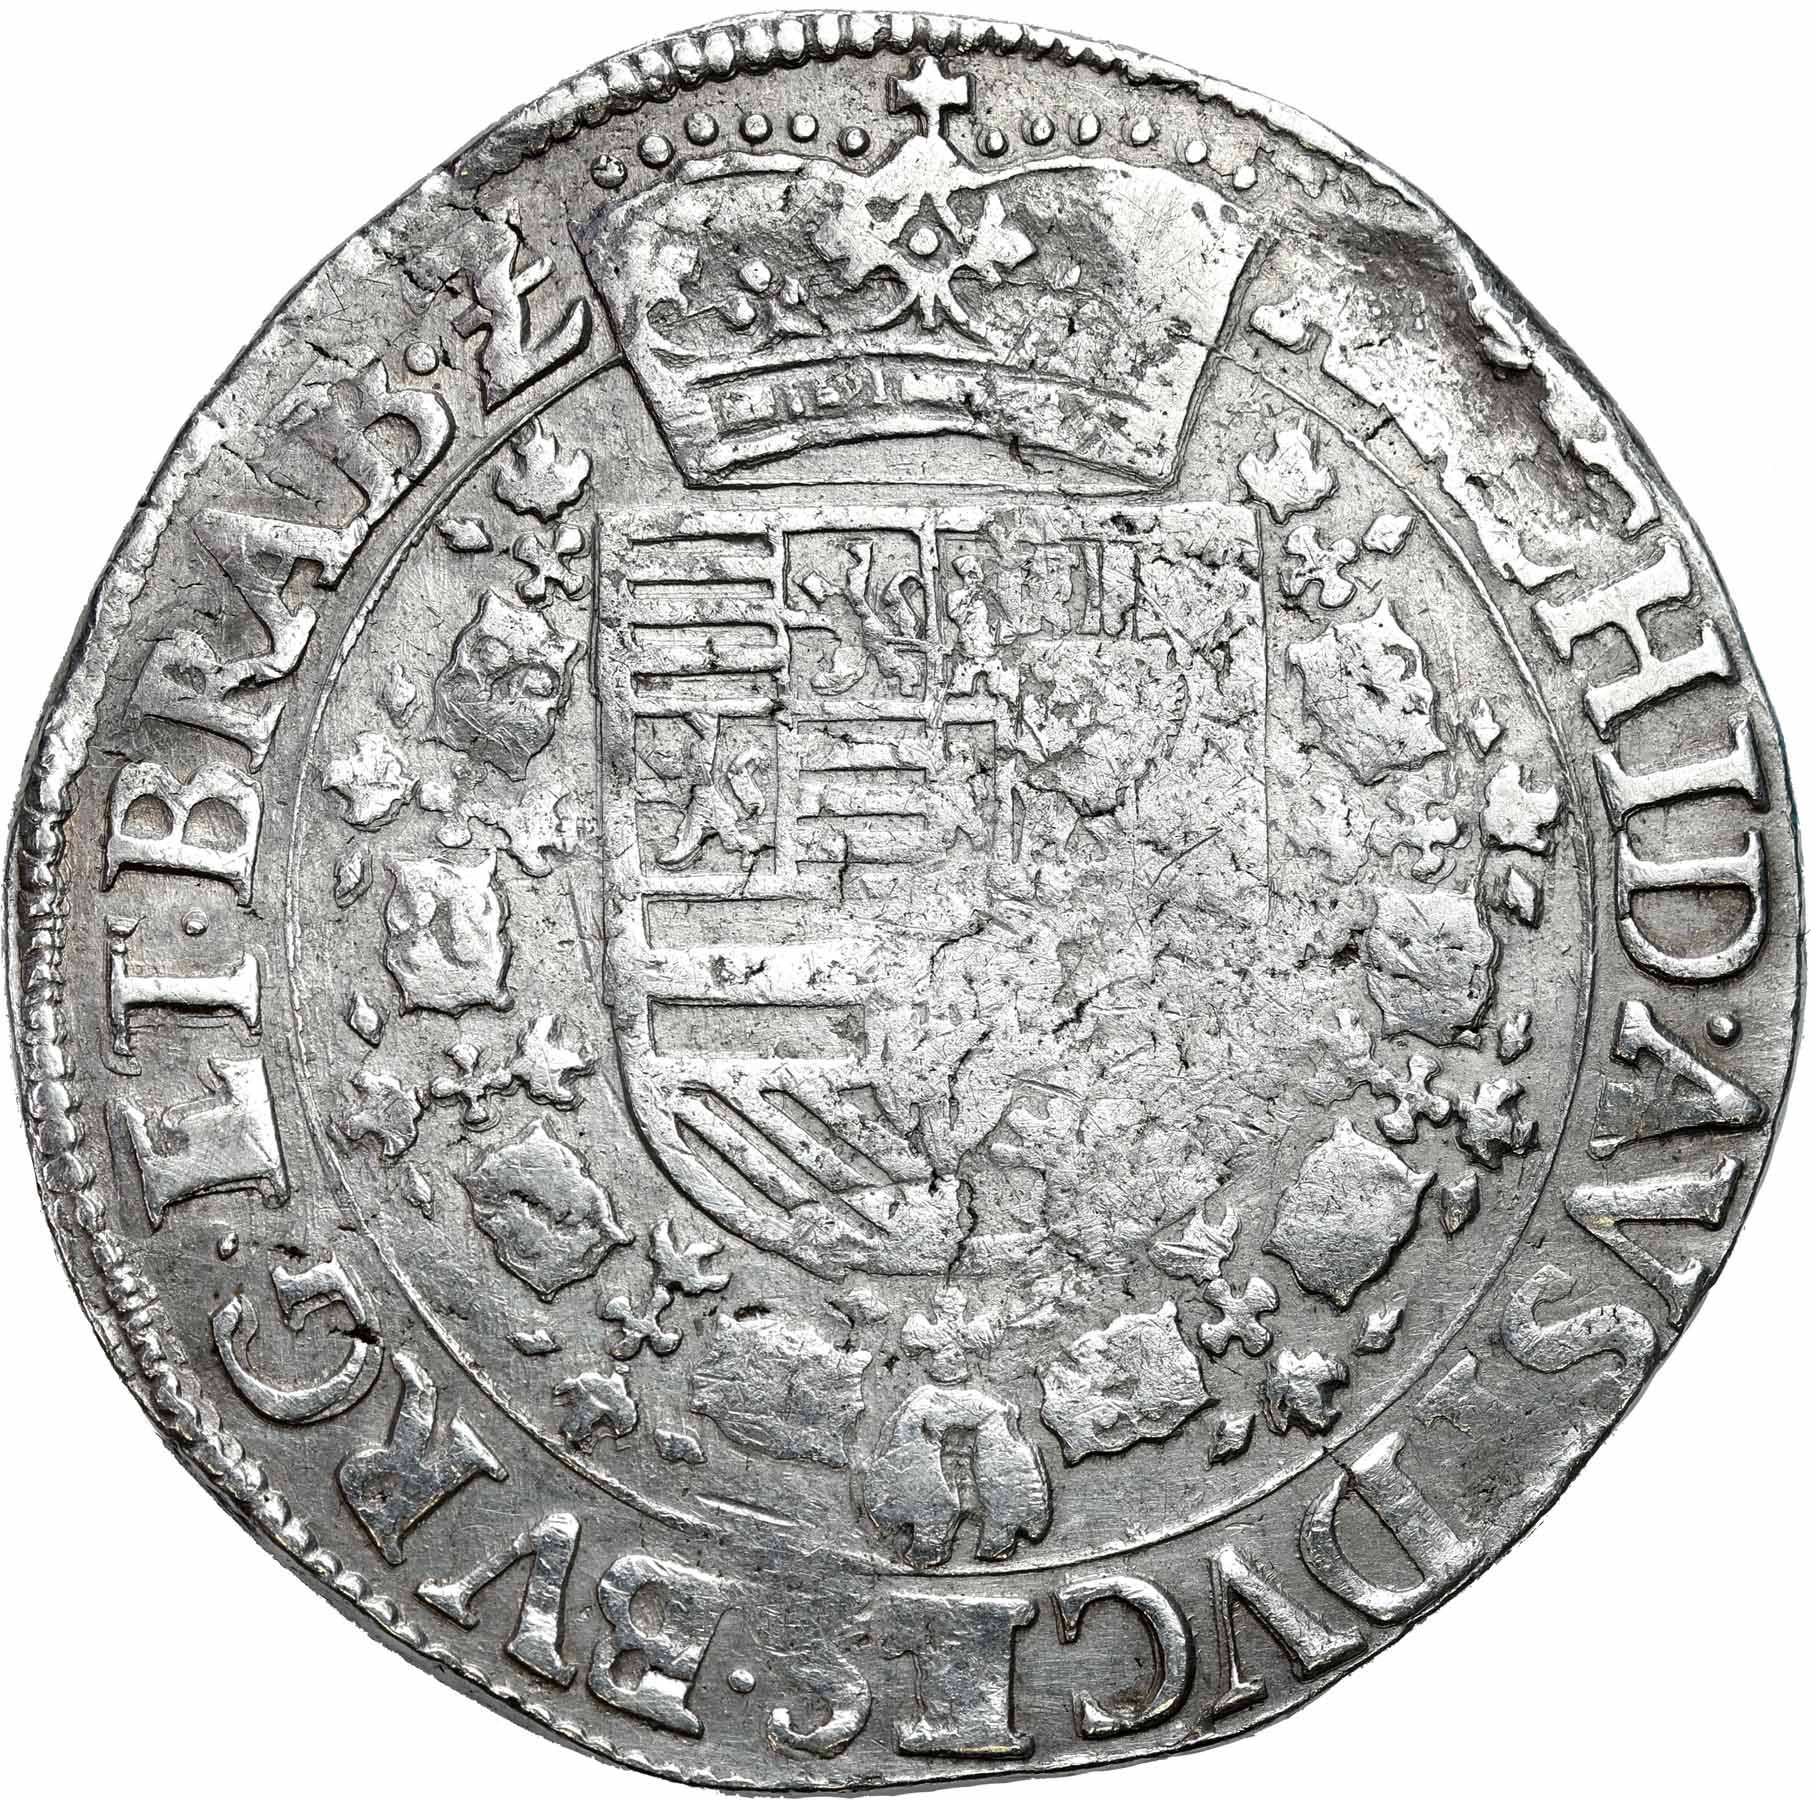 Niderlandy hiszpańskie, Albert i Elżbieta (1598-1621). Patagon bez daty, Antwerpia